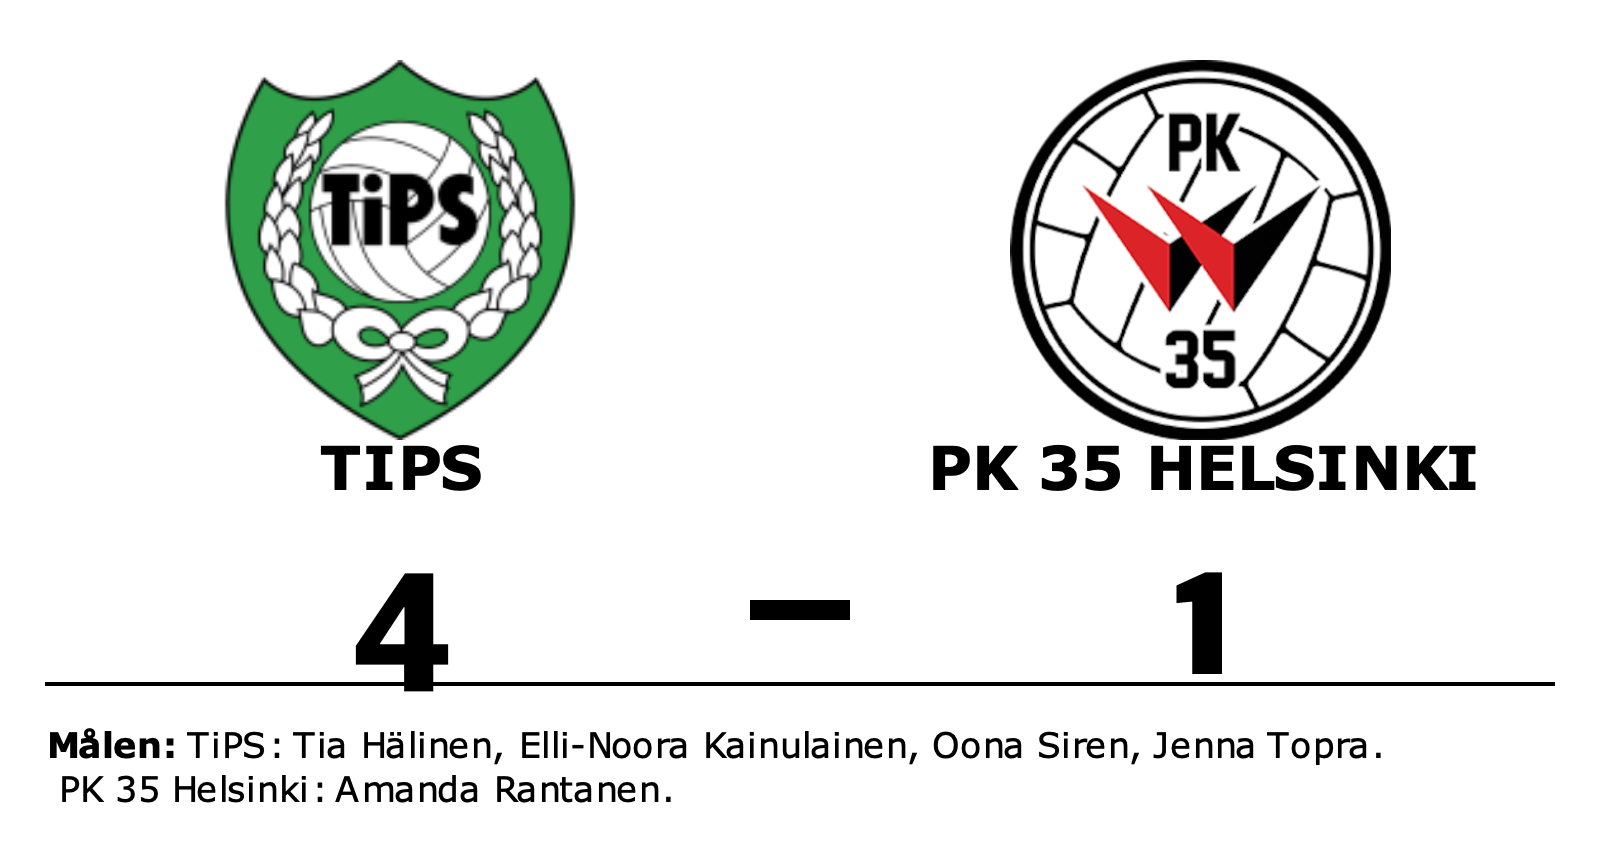 TiPS vann mot PK 35 Helsinki